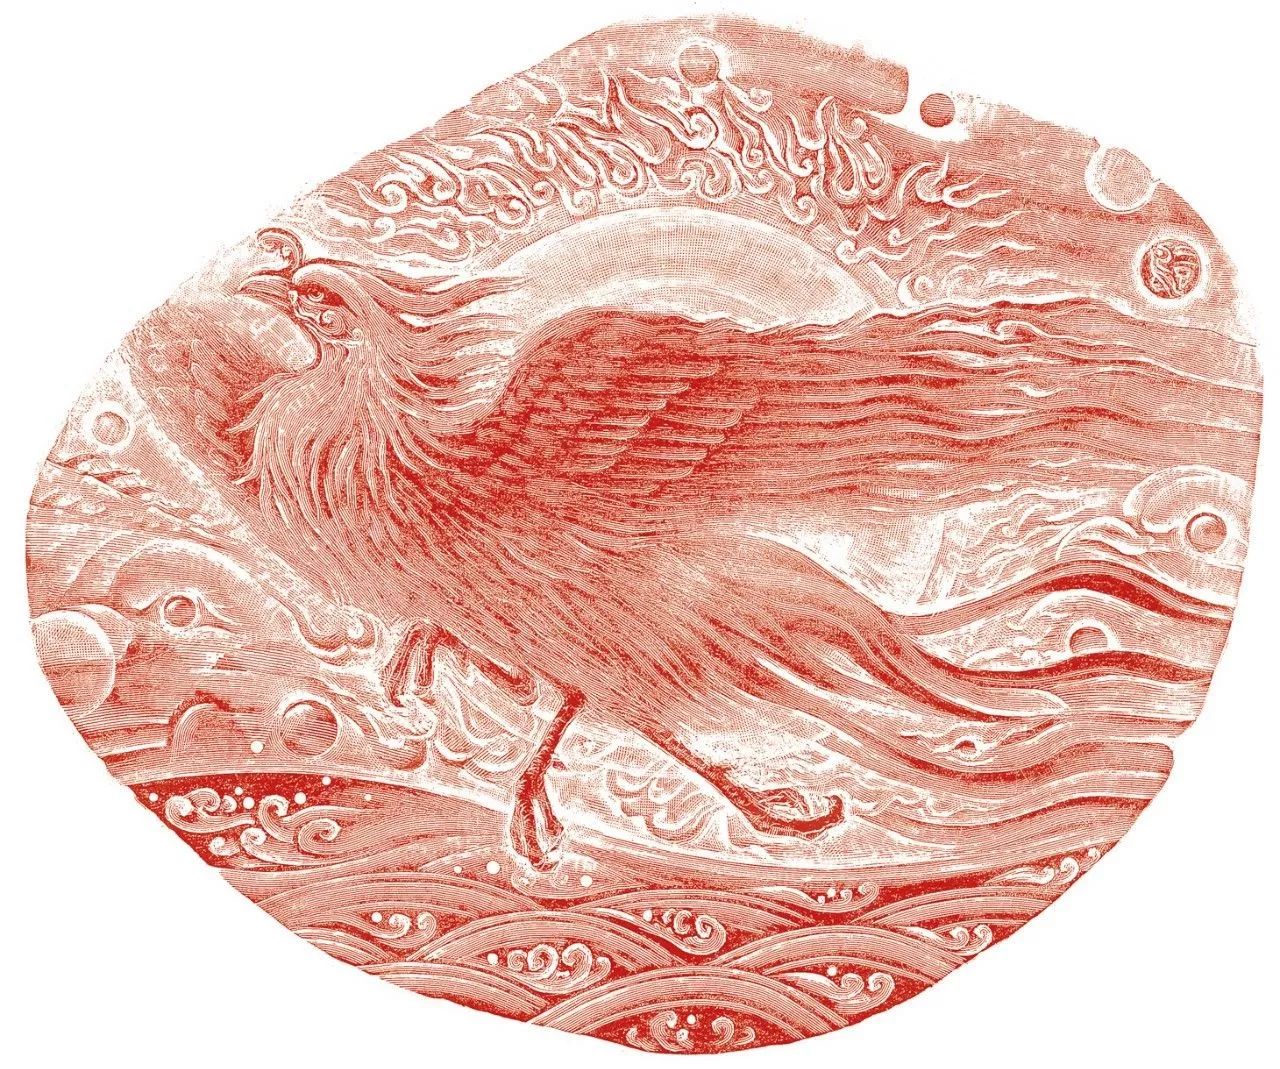 三足鸟中国拥有灿烂丰厚的典籍遗产,插画在找到可以便捷复制的载体